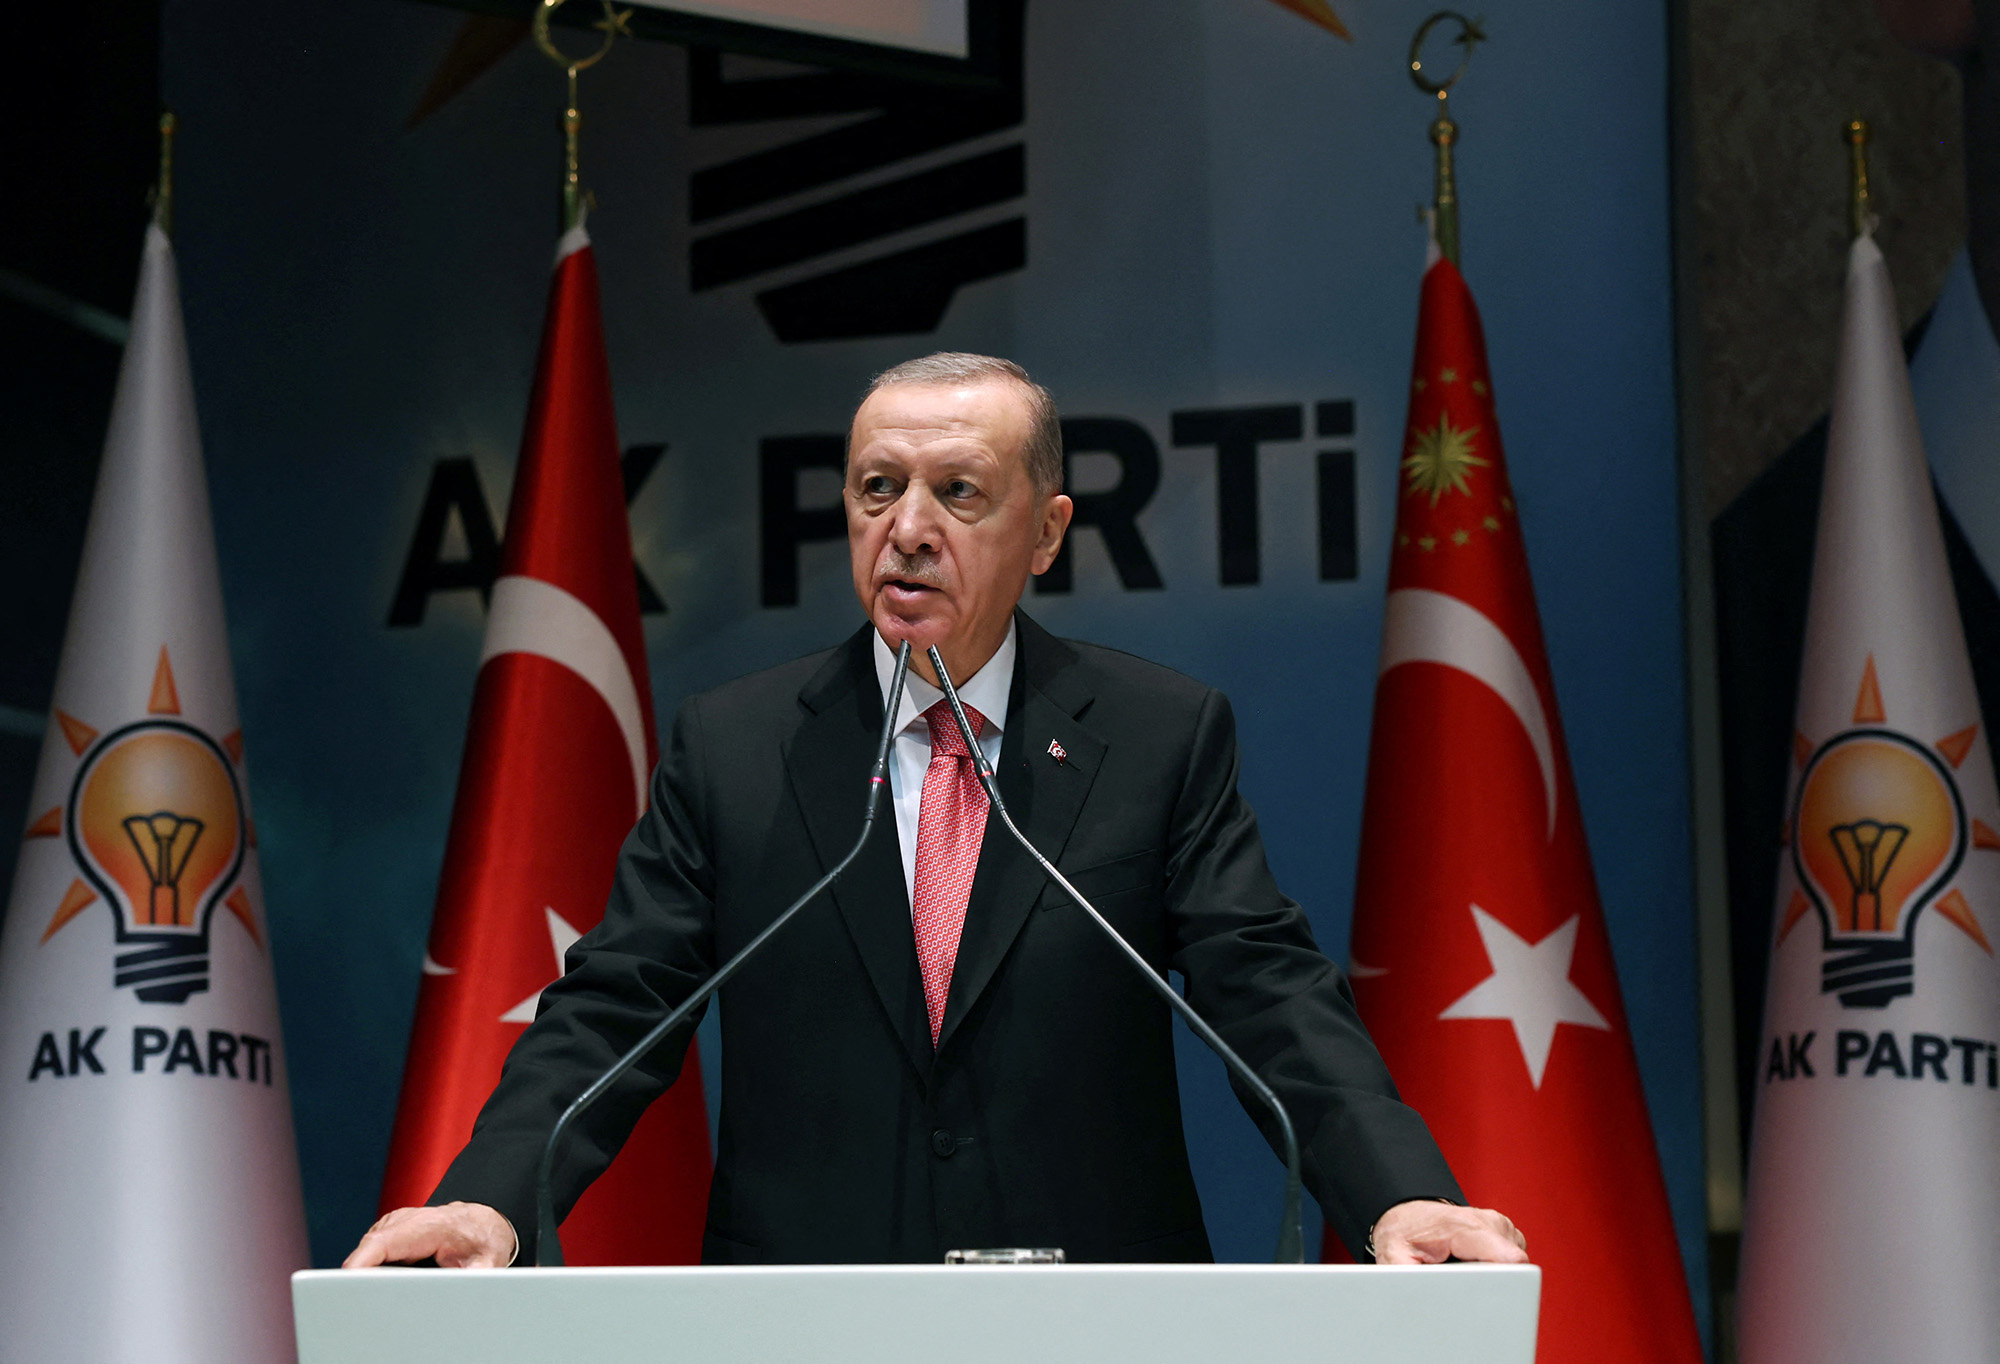 तुर्की के राष्ट्रपति तैयप एर्दोगन 5 जनवरी को तुर्की के अंकारा में अपनी सत्तारूढ़ एके पार्टी की बैठक के दौरान बोलते हैं।